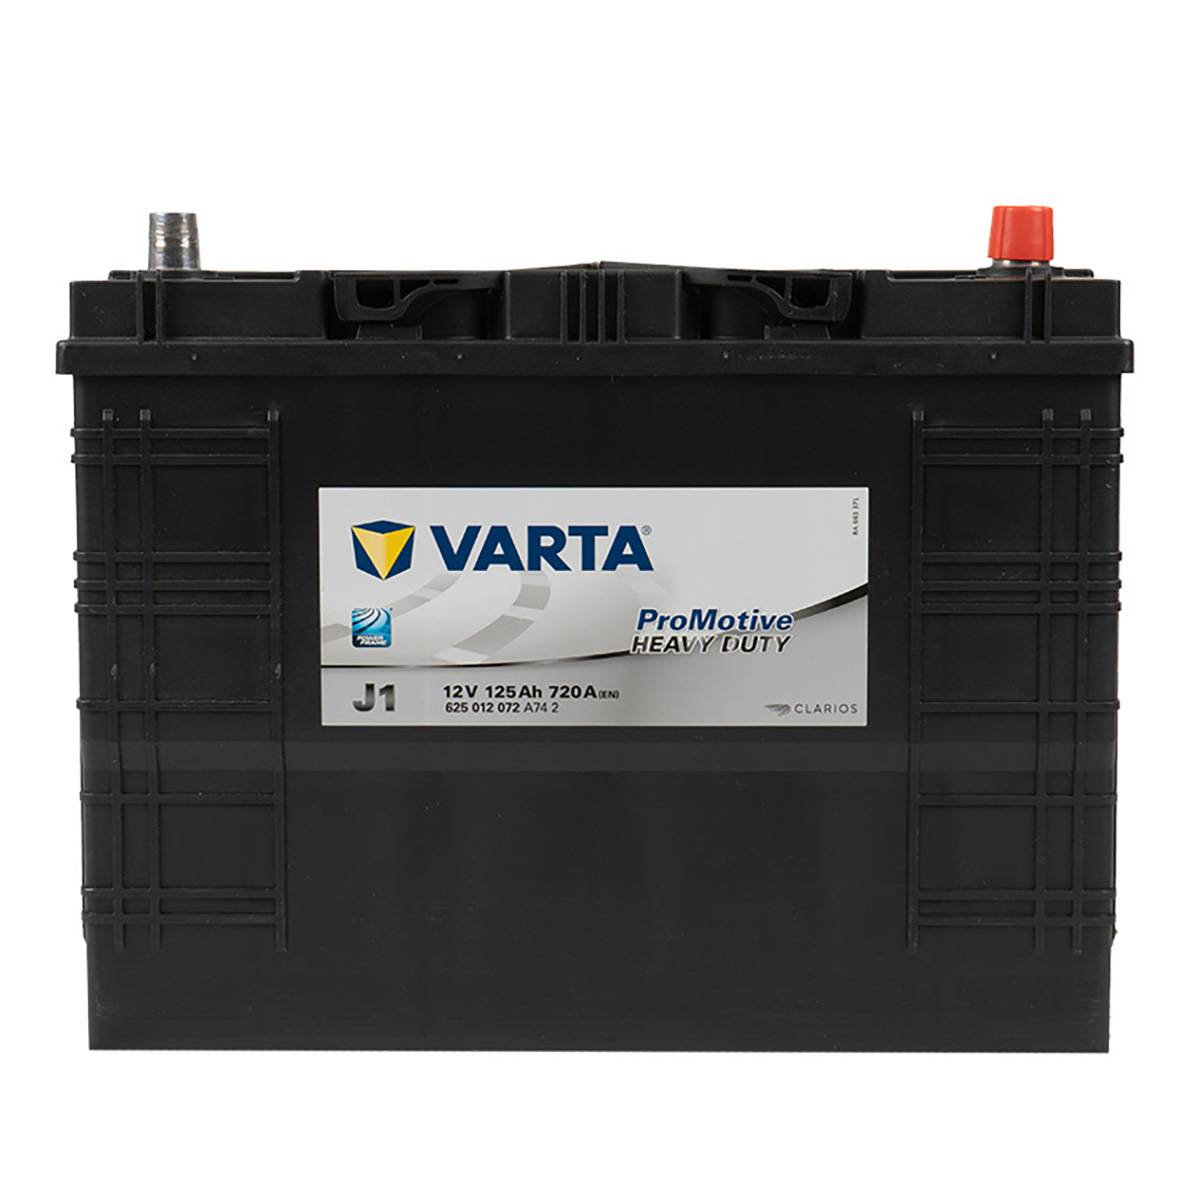 VARTA J1 ProMotive Heavy Duty 12V 125Ah 720A LKW Batterie 625 012 072, Starterbatterie, Caravan, Batterien für